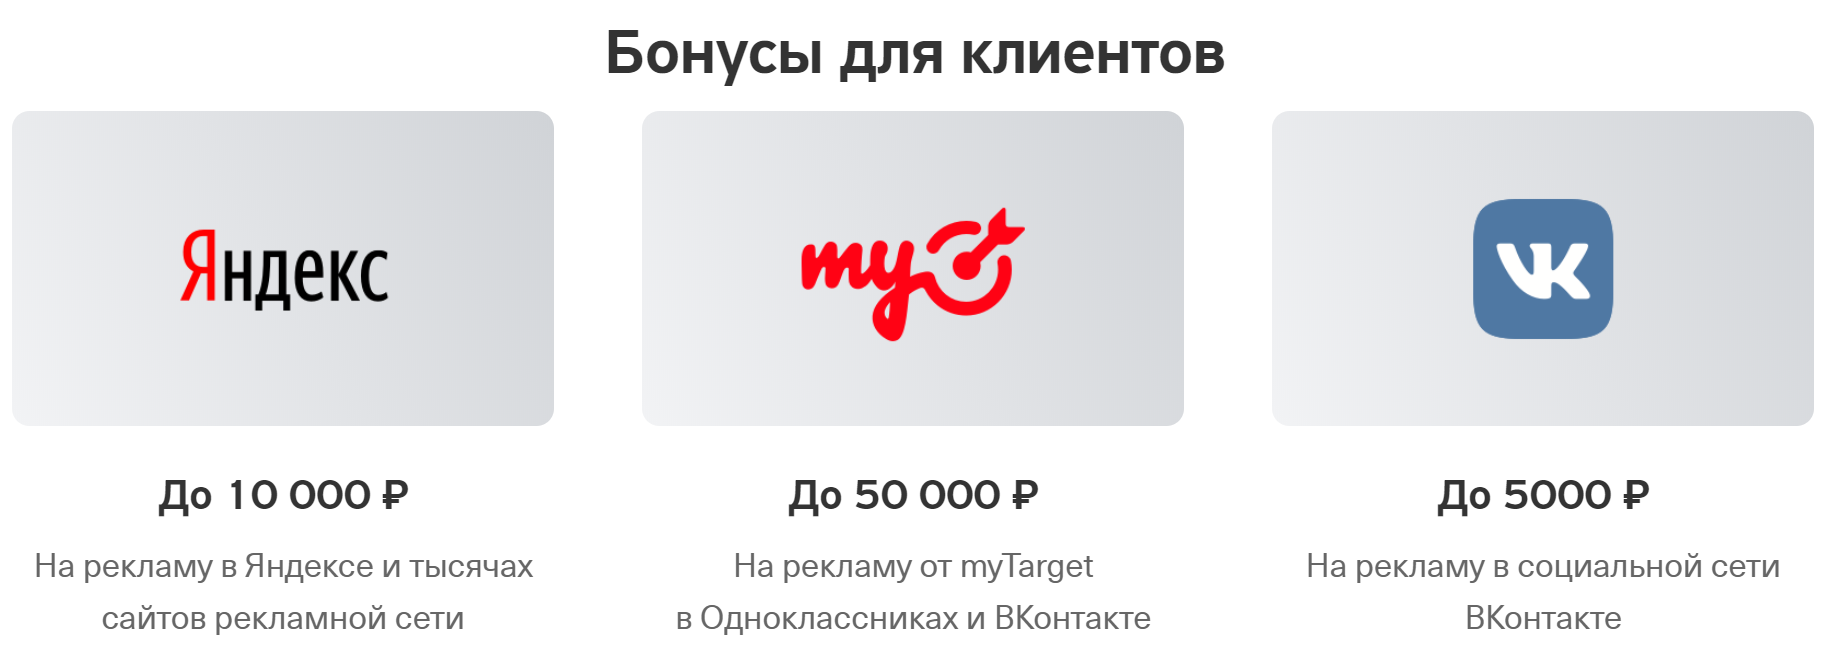 Яндекс партнер